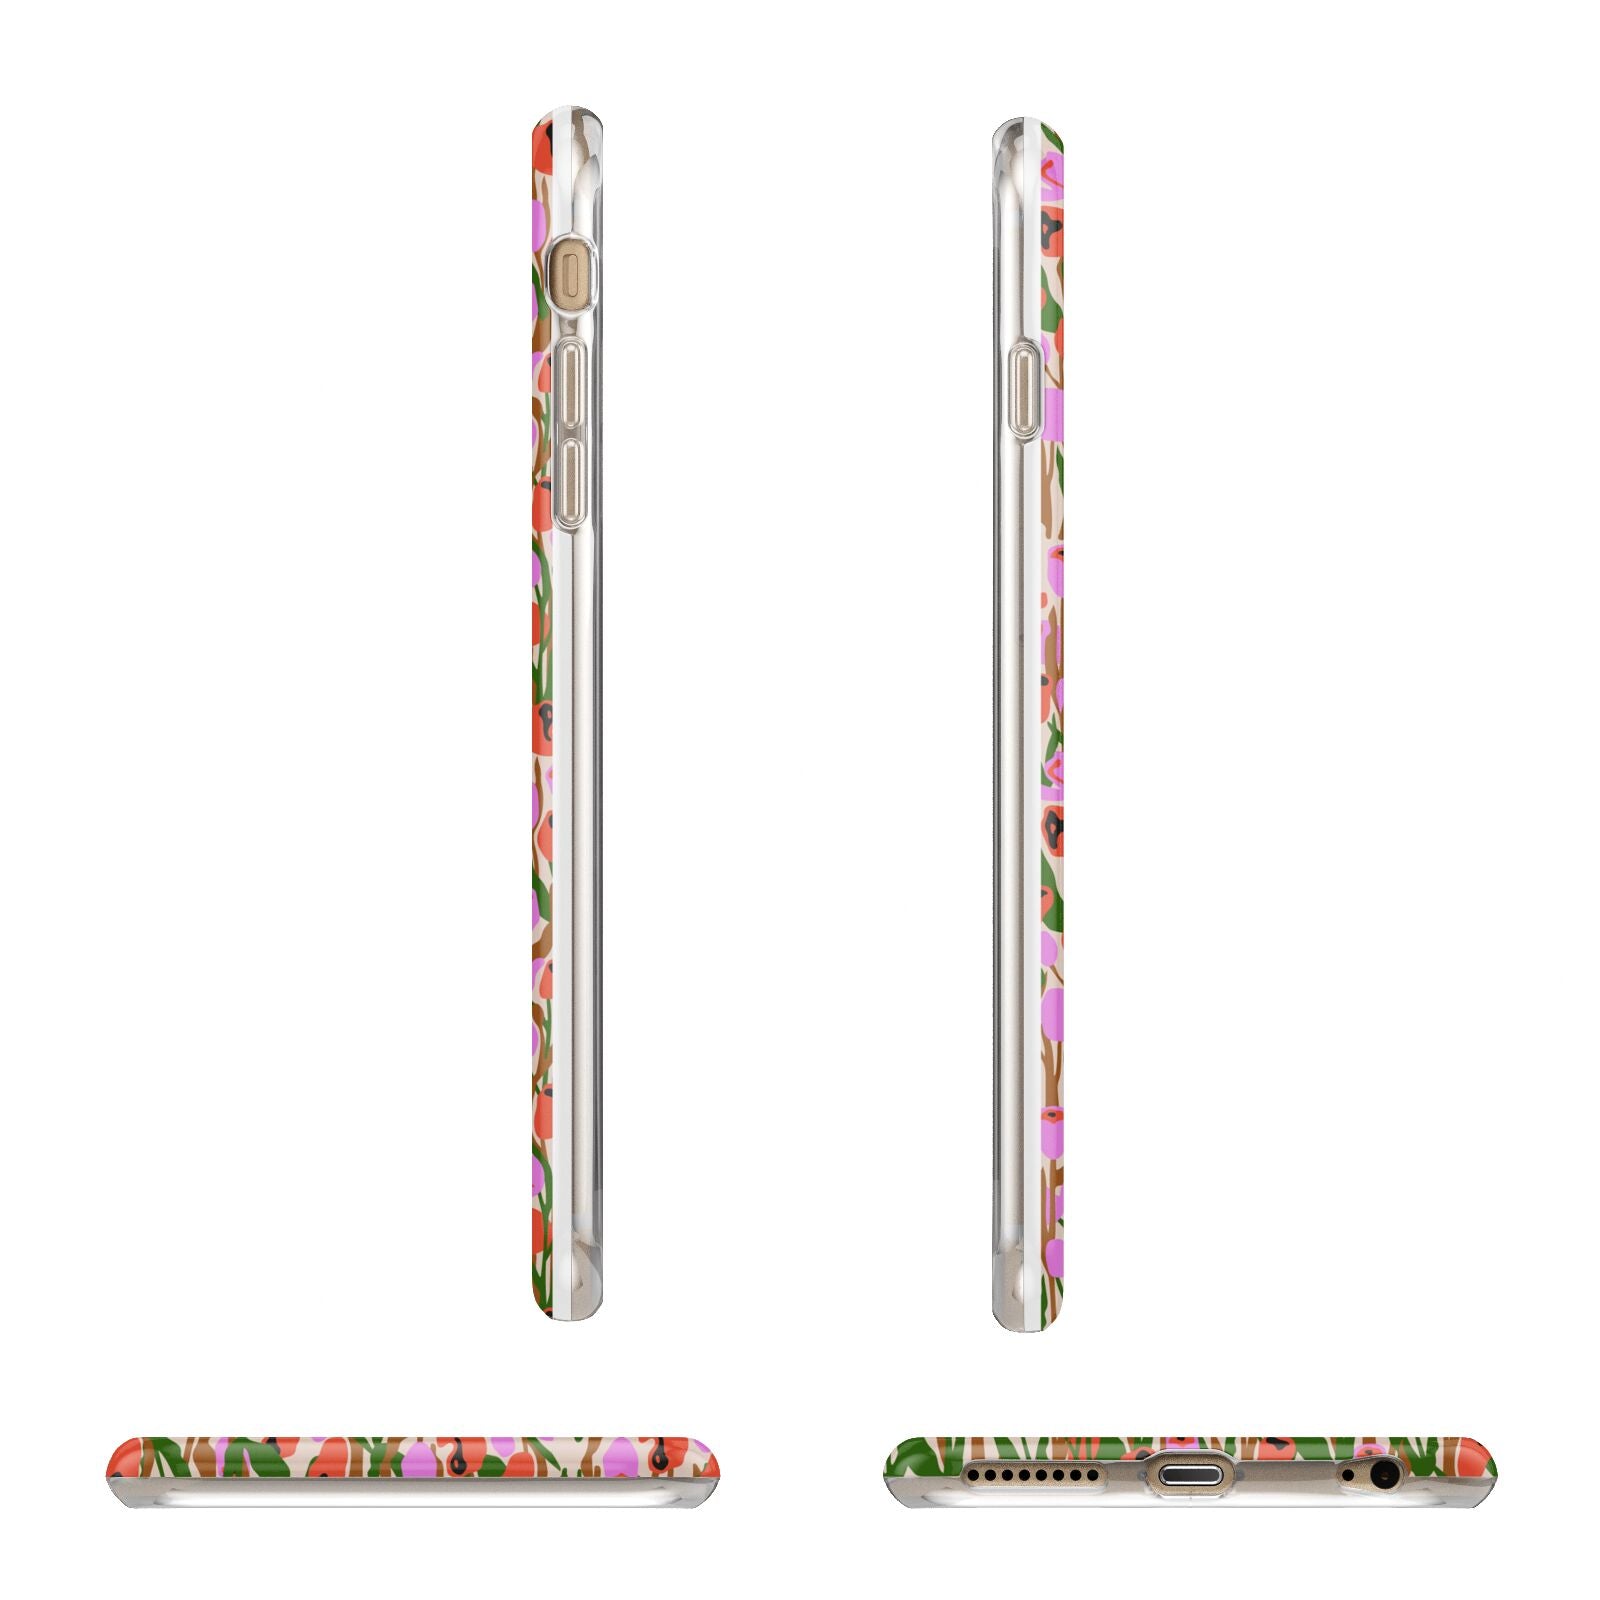 Floral Apple iPhone 6 Plus 3D Wrap Tough Case Alternative Image Angles